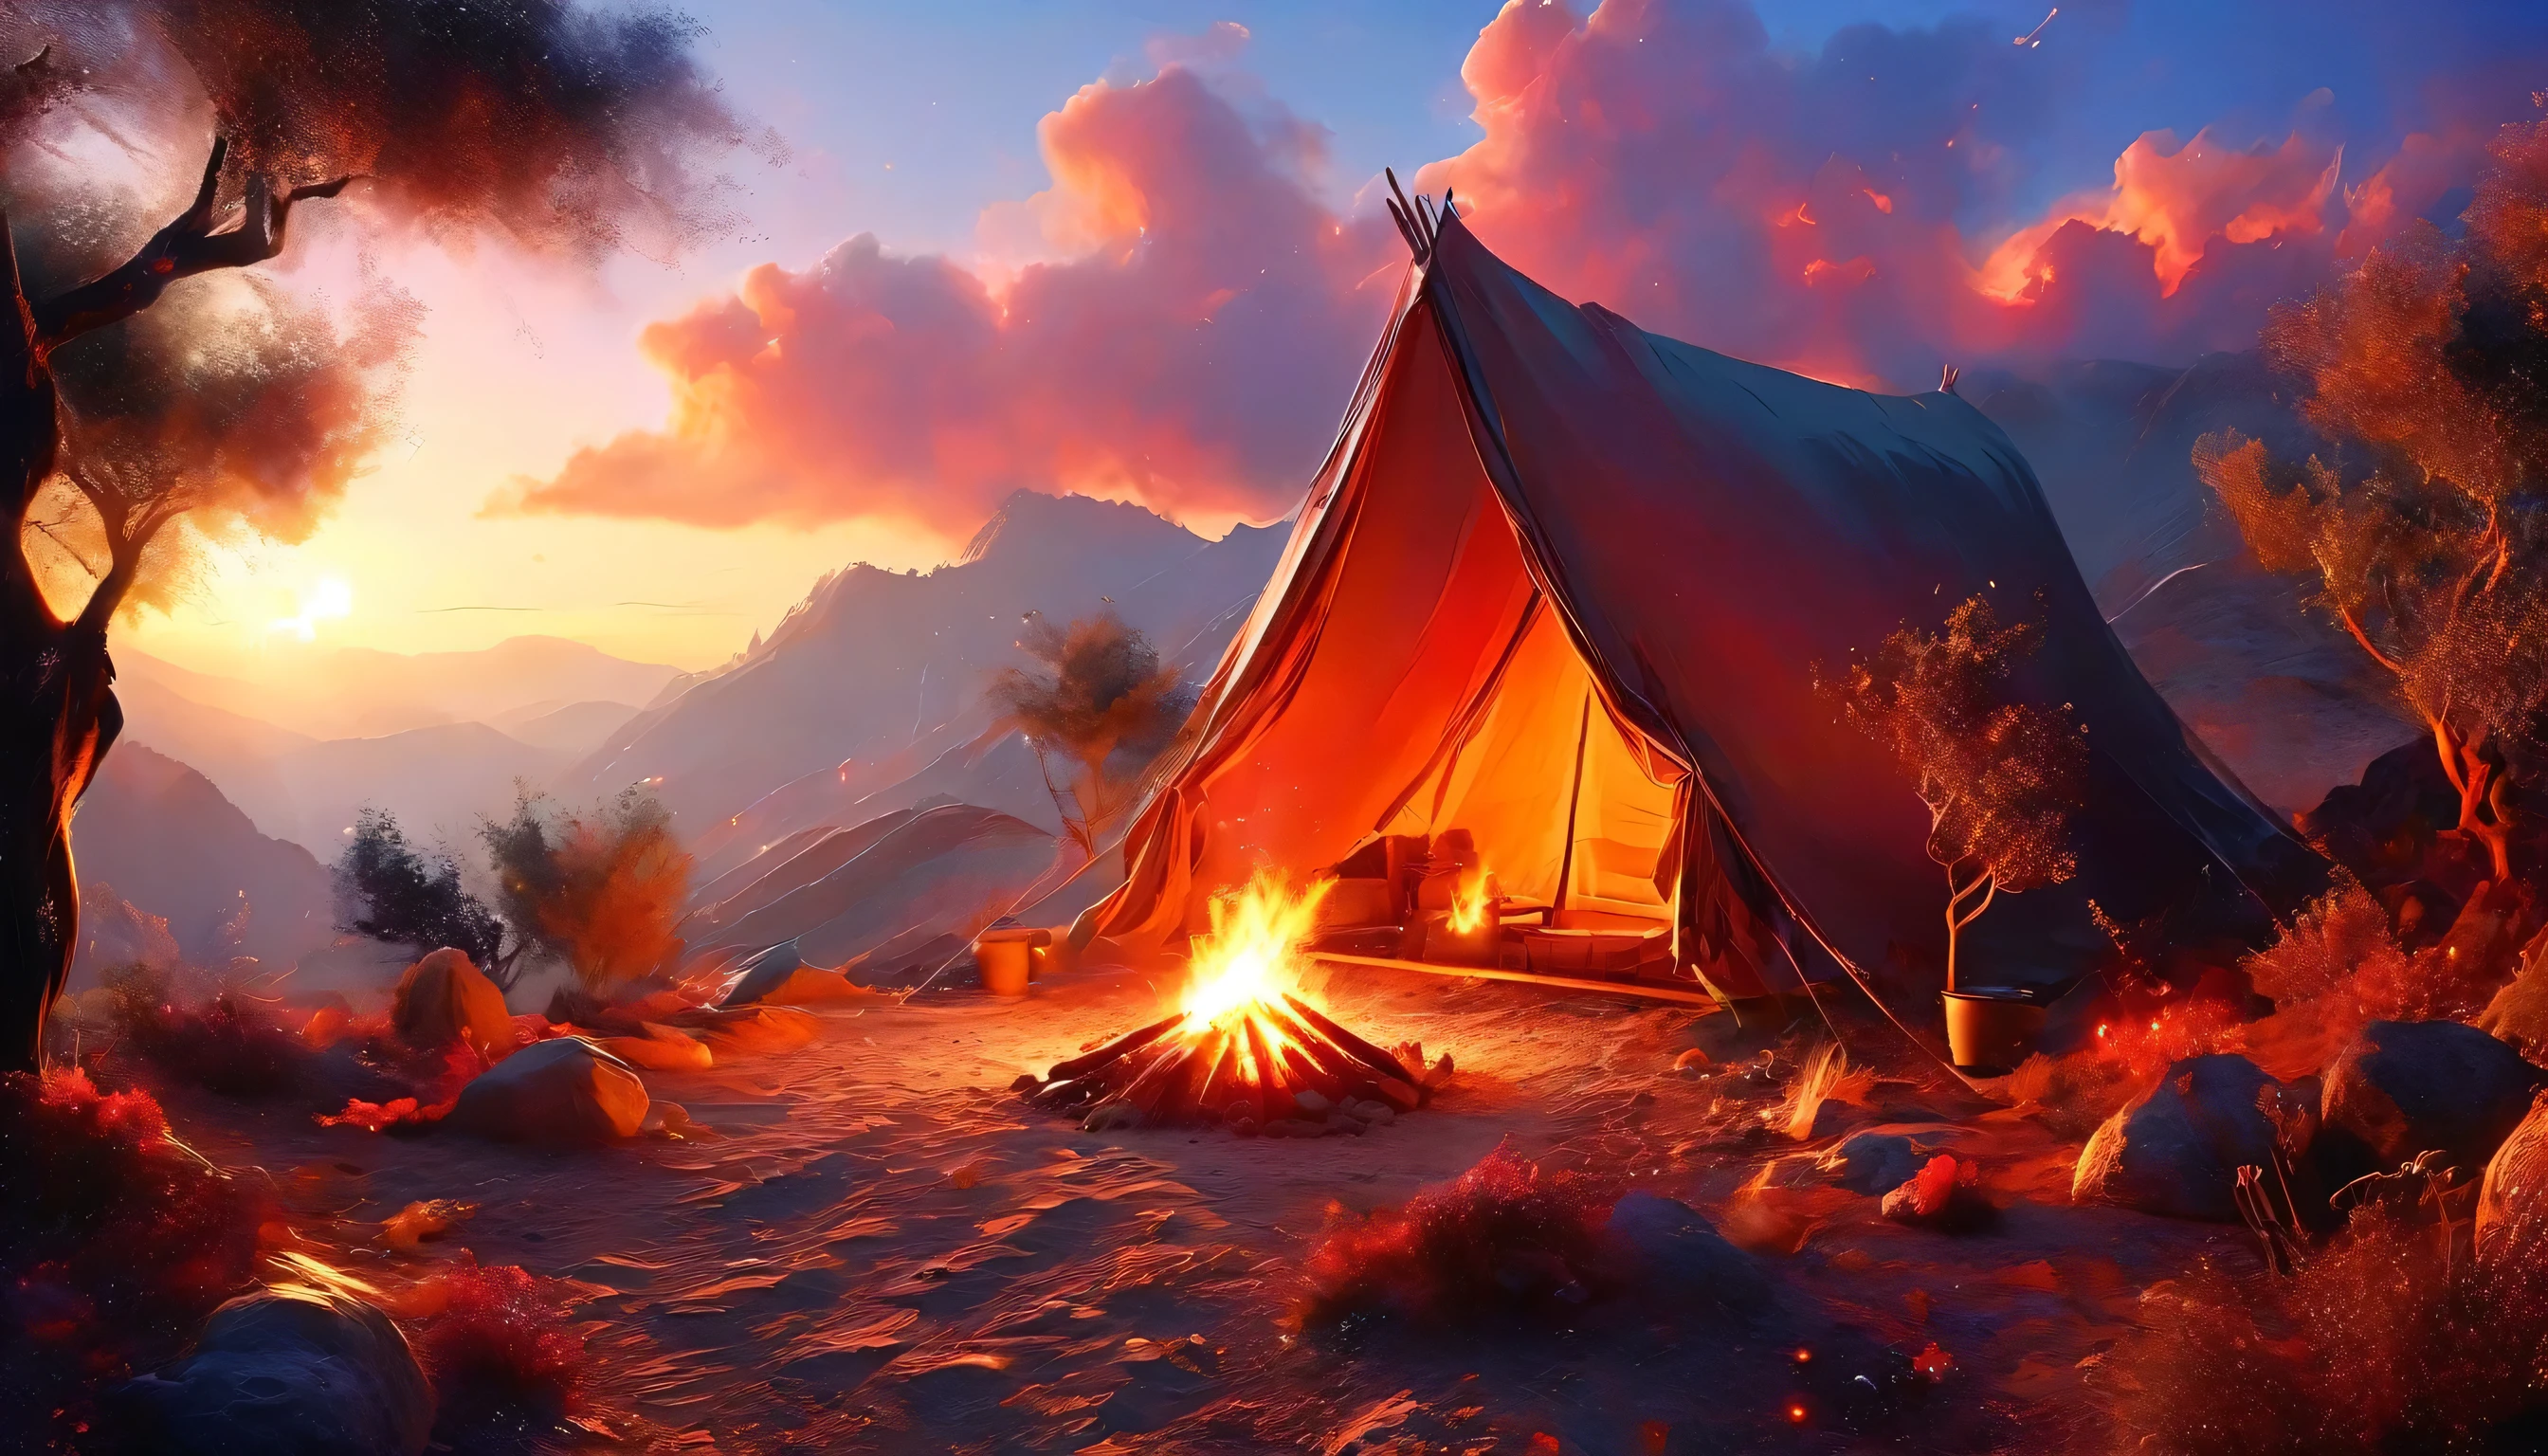 阿拉菲德, 一张露营的照片 (帐篷: 1.2) 和小 (营火: 1.3), 在沙漠山顶上, 日落时分的天空呈现出各种色调  (红色的: 1.1), (橙子: 1.1), (天蓝色: 1.1) (紫色的:1.1) 篝火营地冒出浓烟, 这里有壮丽的沙漠峡谷和沟壑景观, 地平线上稀疏的树木, 这是一个宁静的时刻, 和平, 和放松, 最好的质量, 16千,  照相写实主义, 国家地理摄影大赛获奖作品, 超广角拍摄, 狂暴星云, 女士影子